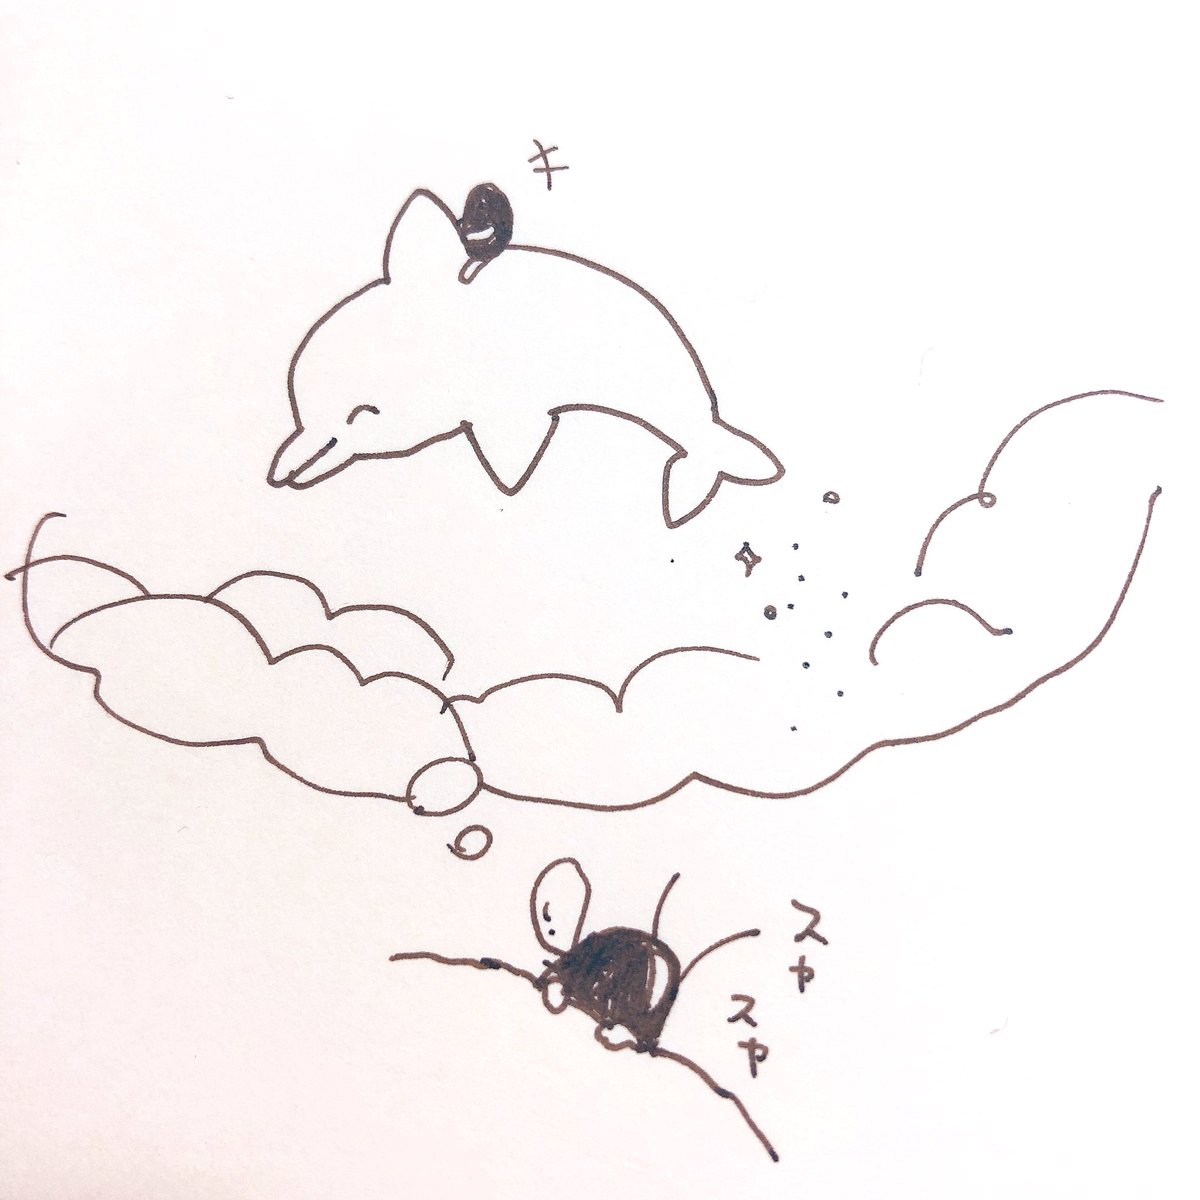 その日の夜、黒豆は雲の中をイルカに乗って泳ぐ夢をみましたとさ。 